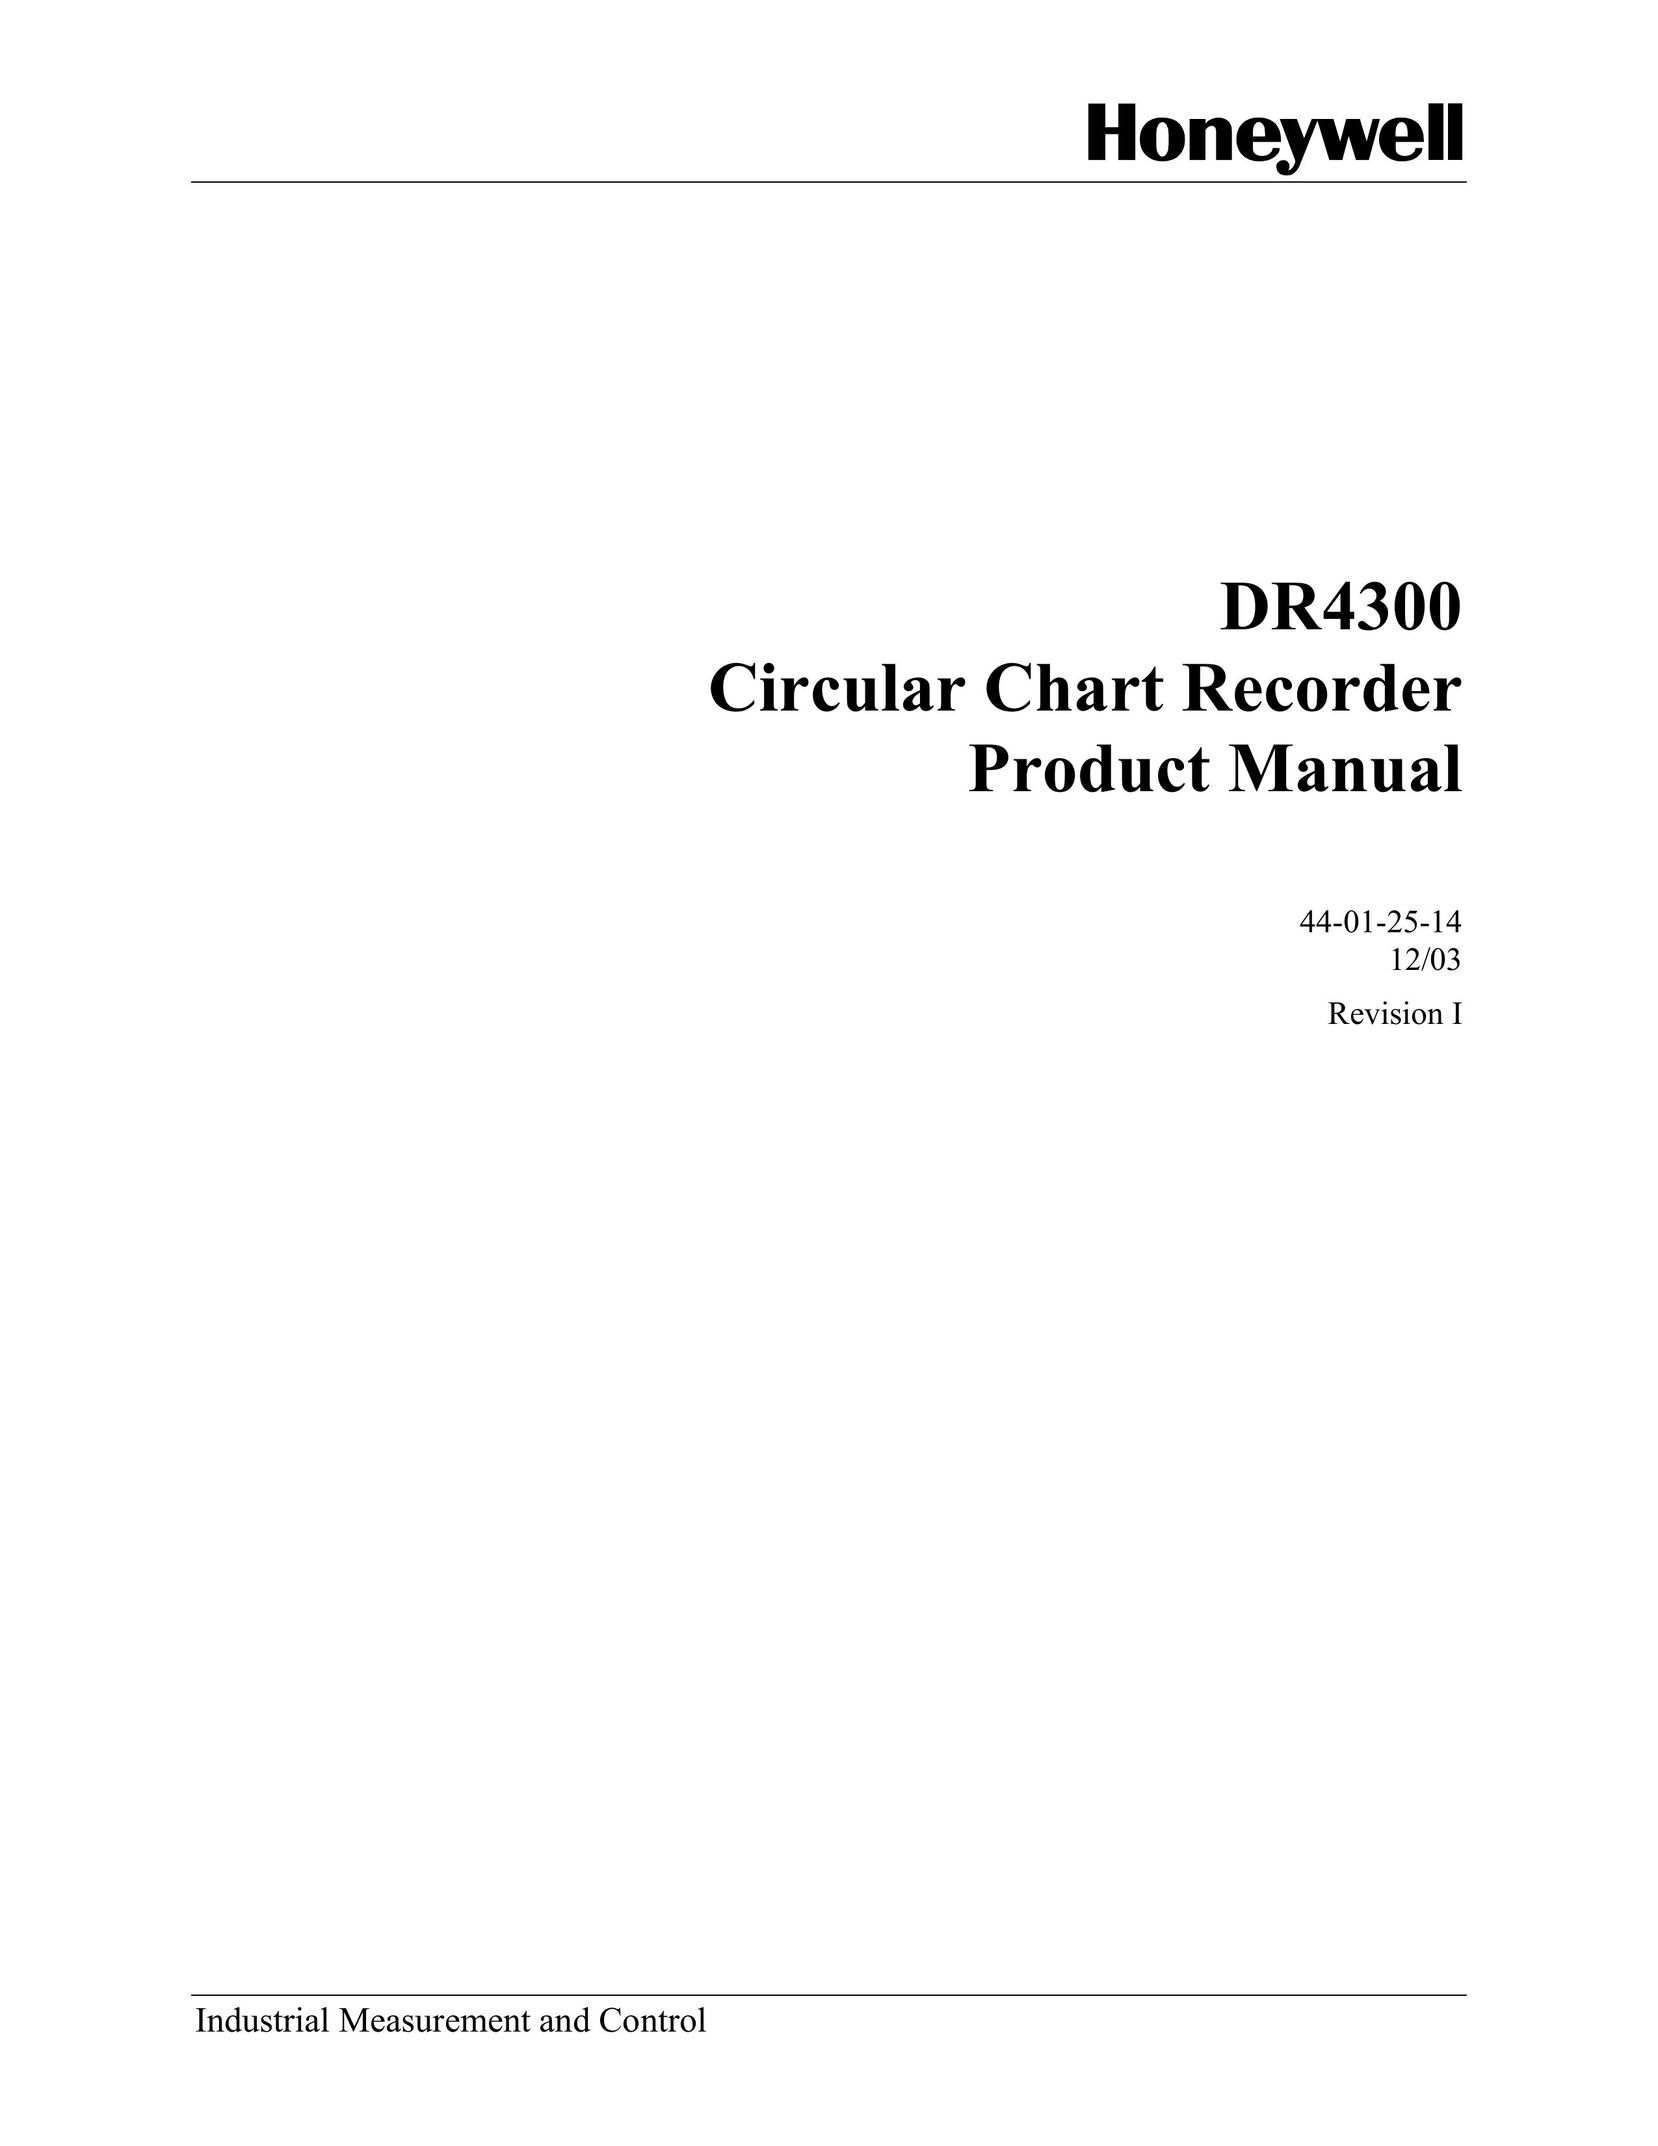 Honeywell DR4300 DVR User Manual